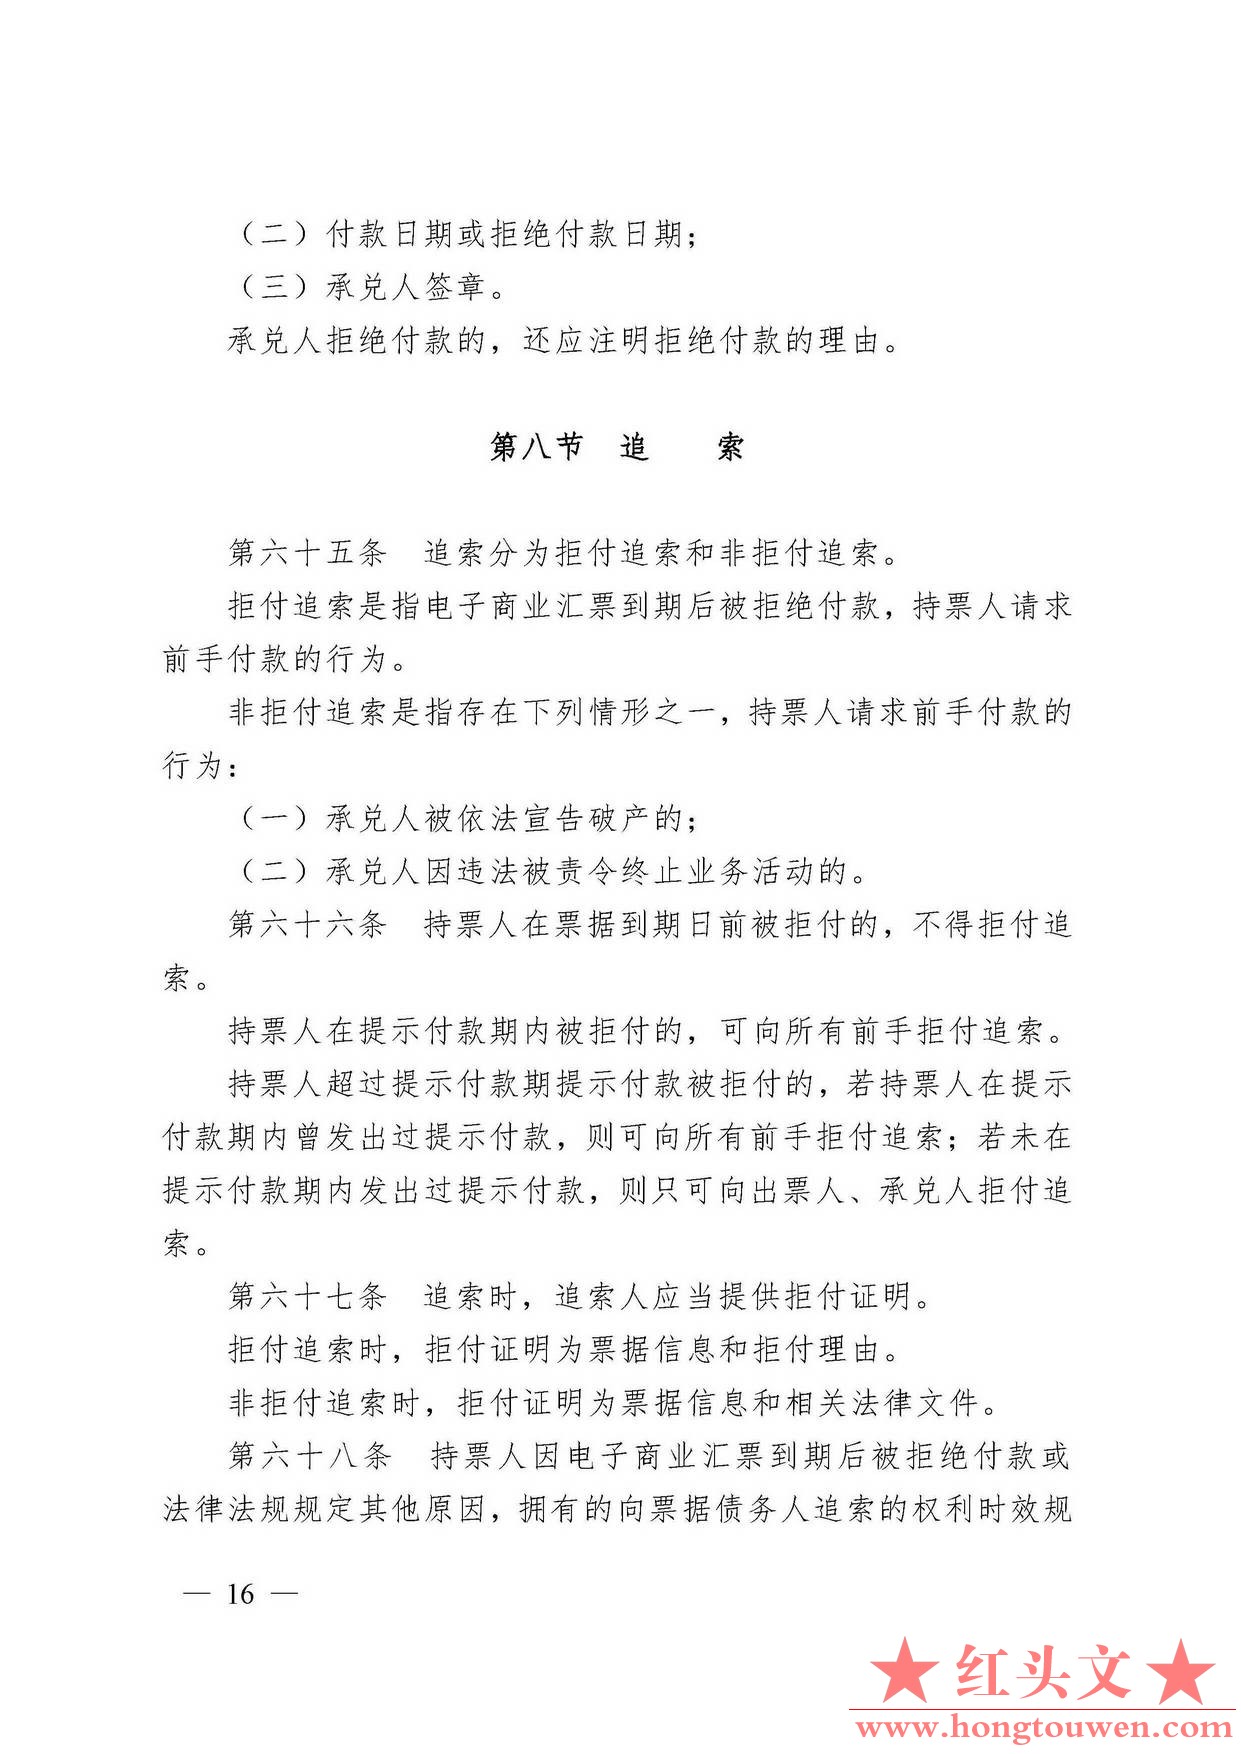 中国人民银行令[2009]2号-电子商业汇票管理办法_页面_16.jpg